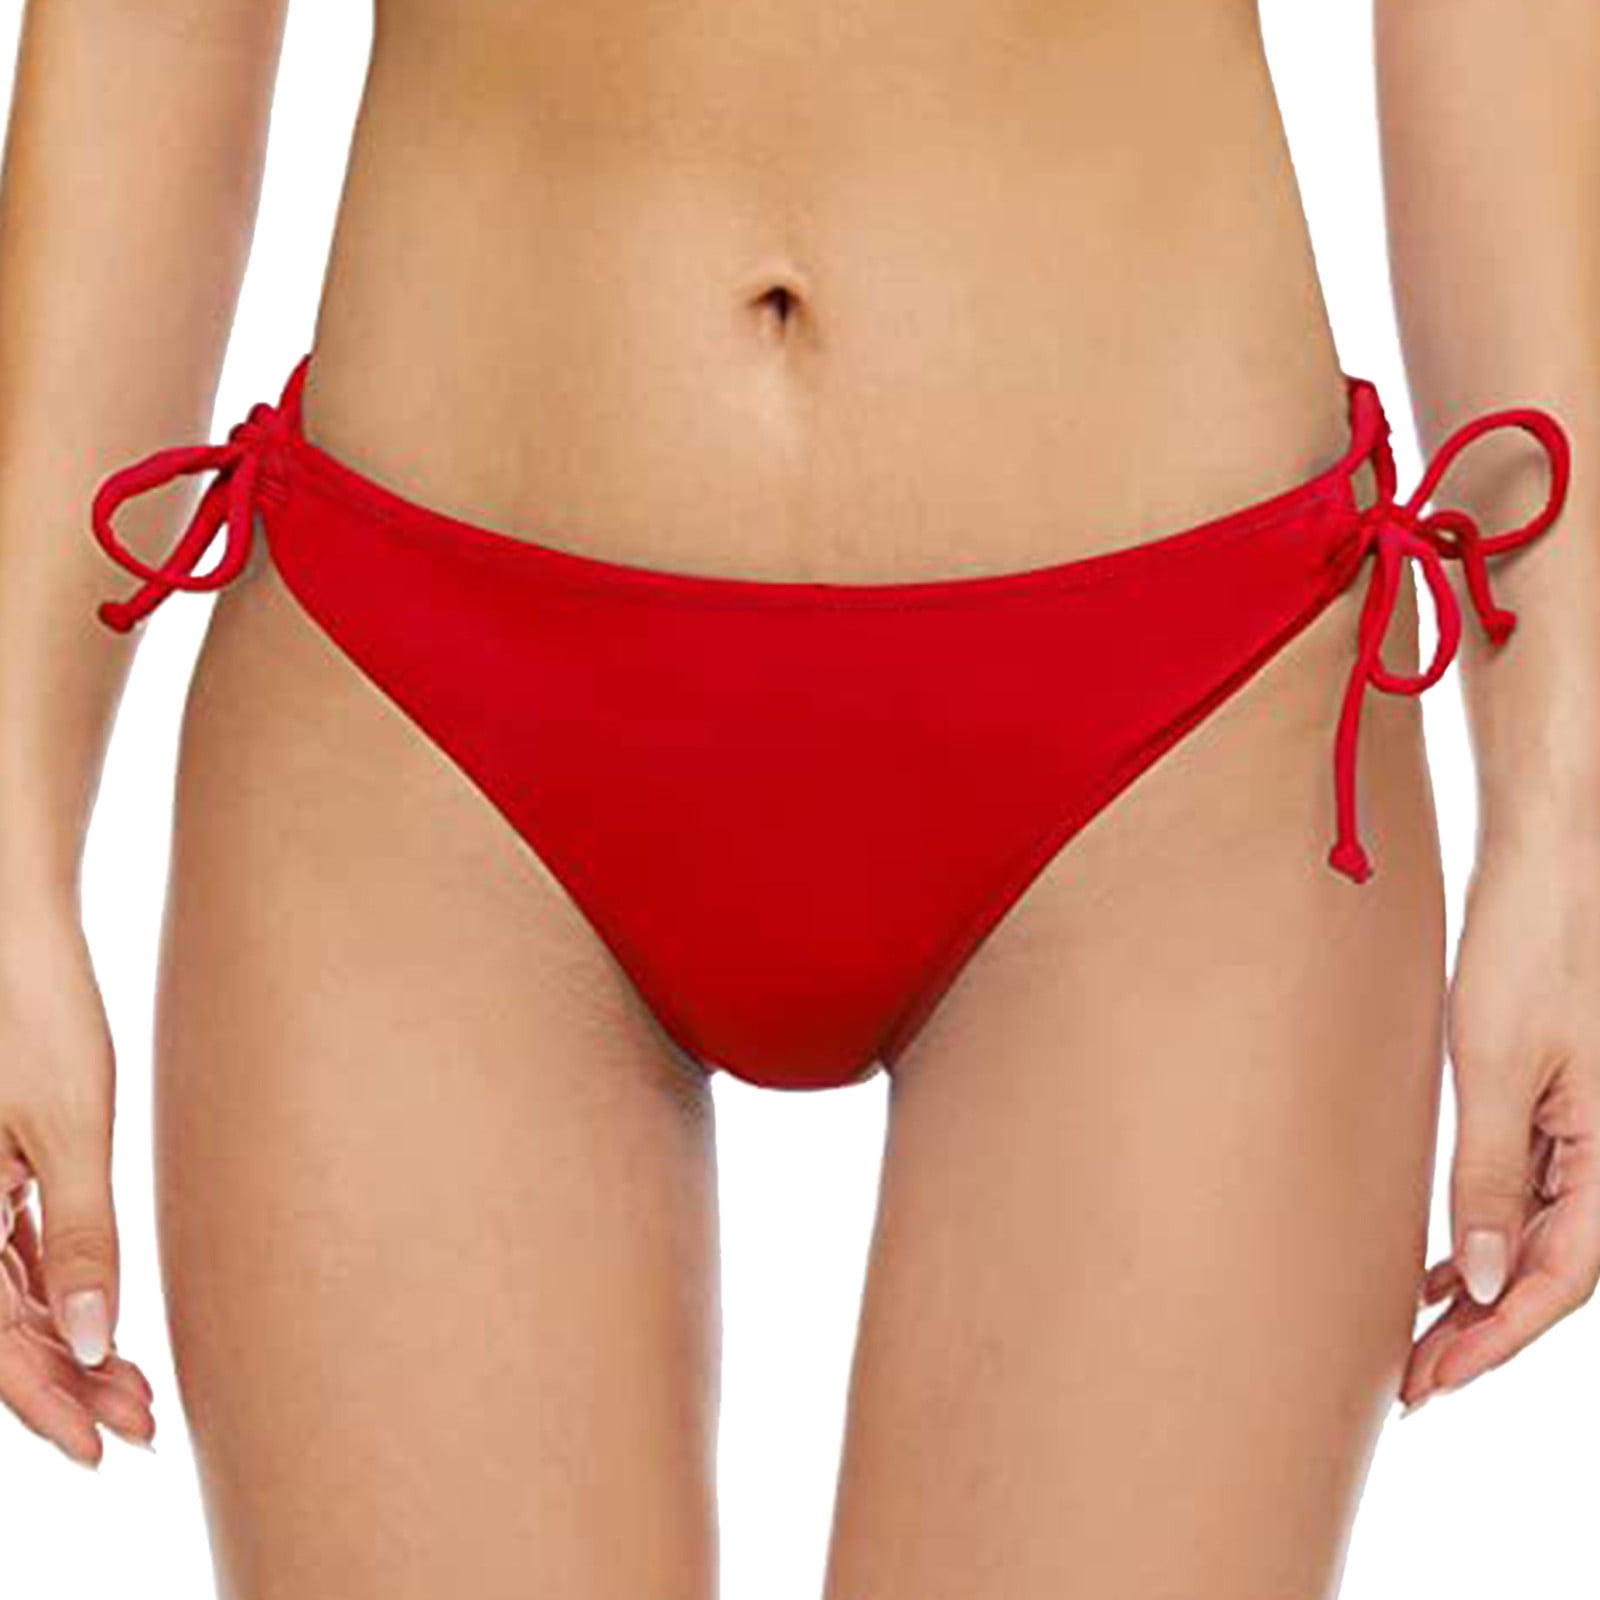 Larisalt Bikini Sets For Women,Women High Waisted Bikini Twist